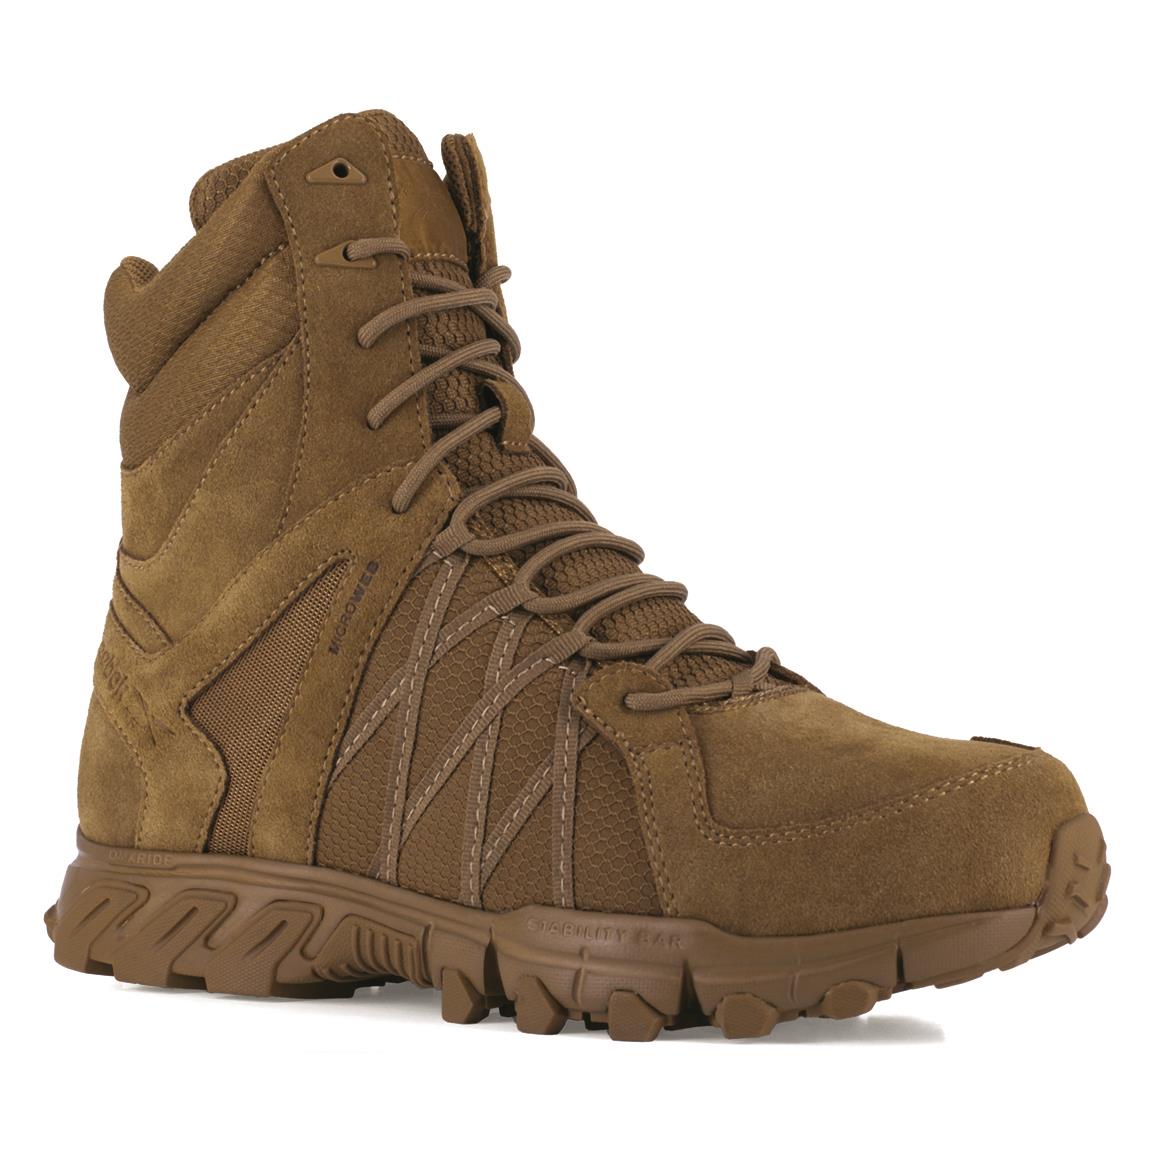 Reebok Men's Trailgrip 8" Side-zip Tactical Boots, Coyote